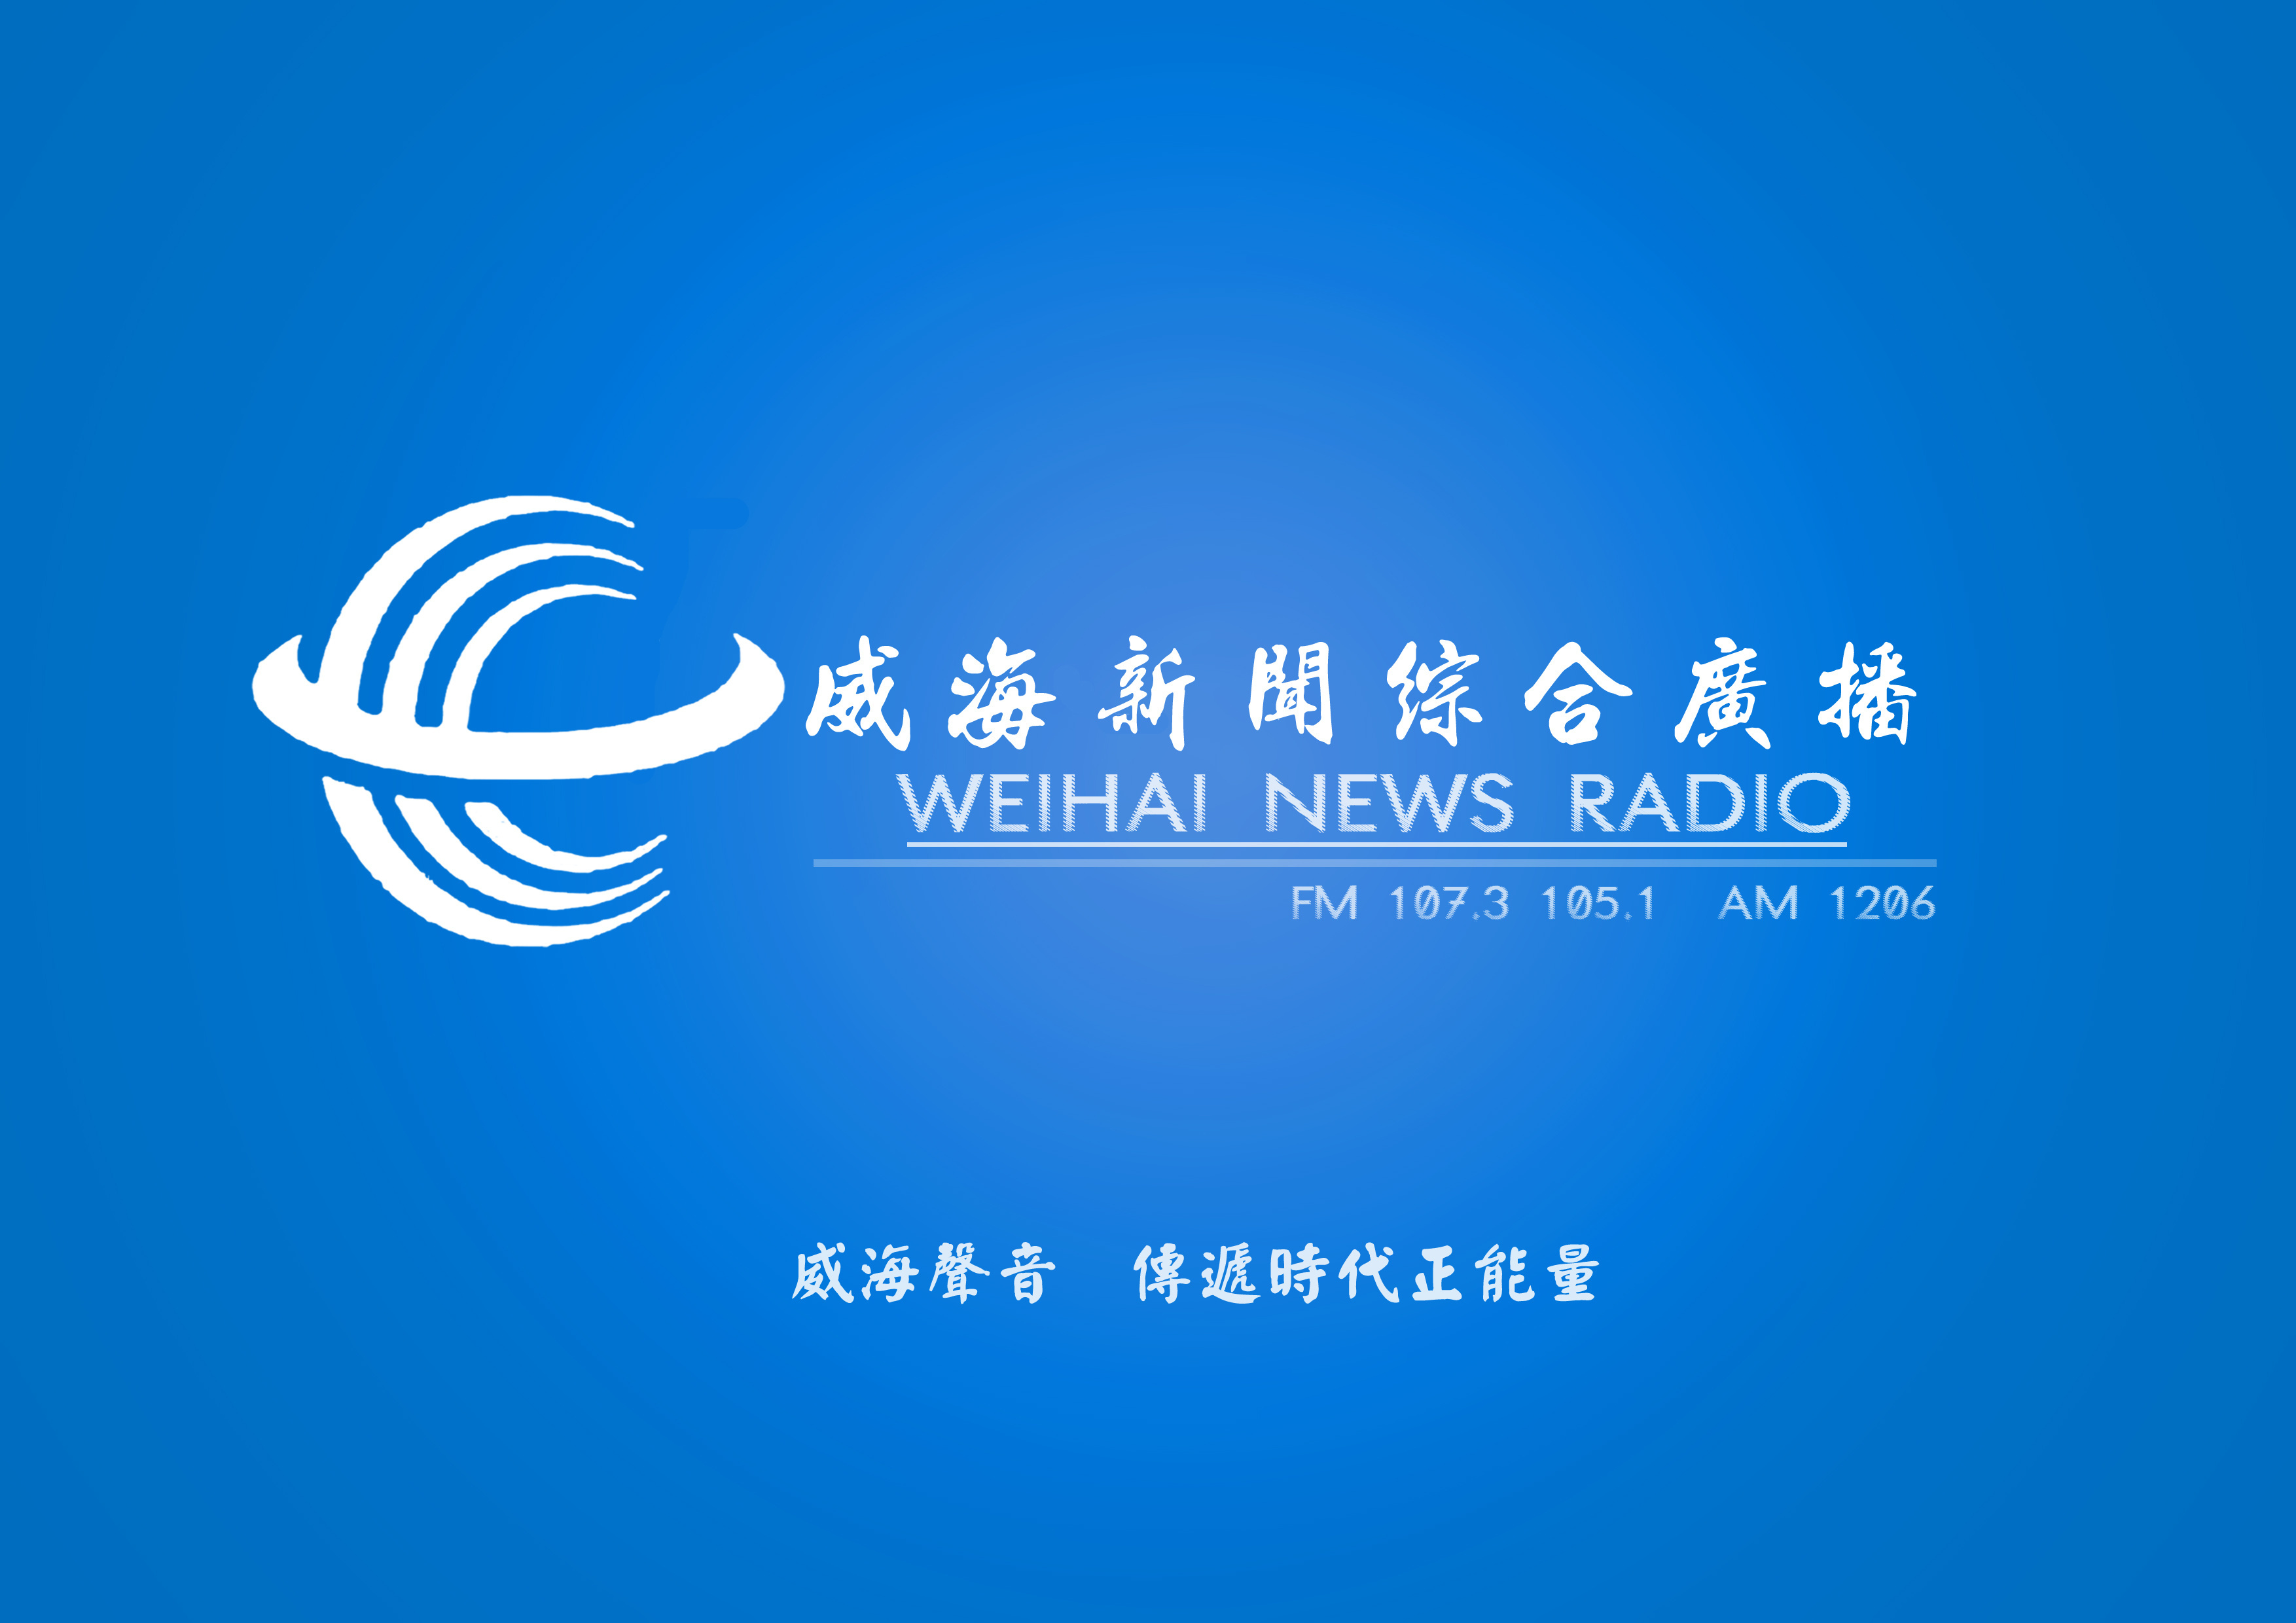 安徽广播电台-安徽电台在线收听-蜻蜓FM电台